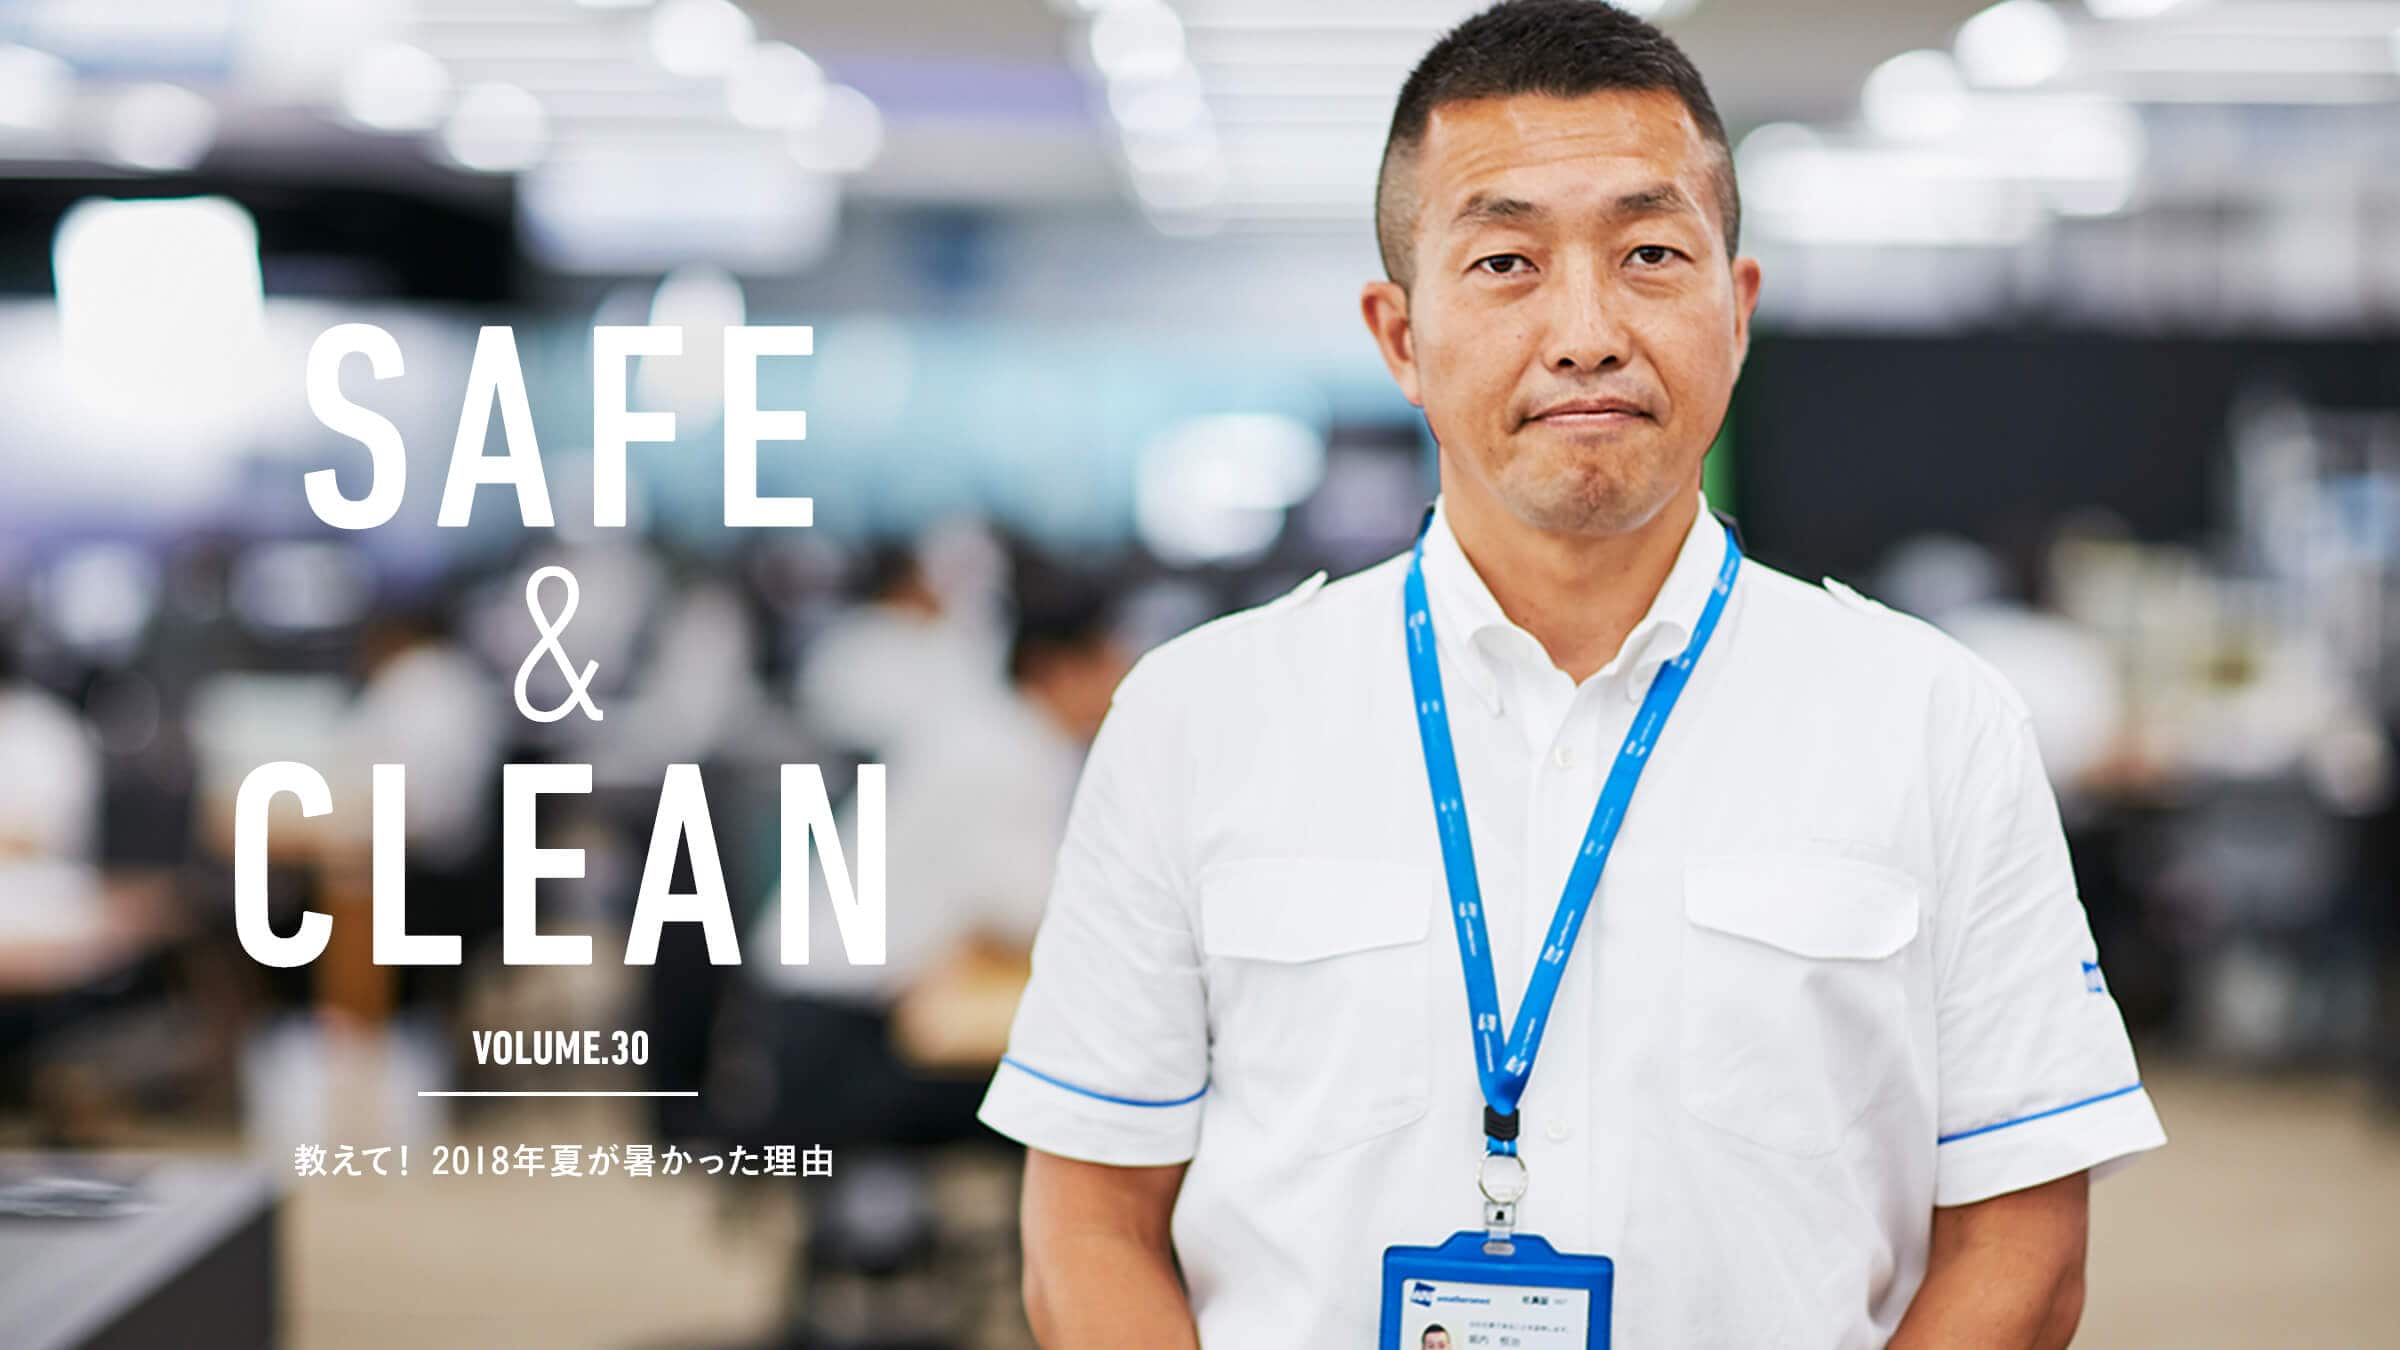 Safe & Clean Vol.30  āI2018NĂR